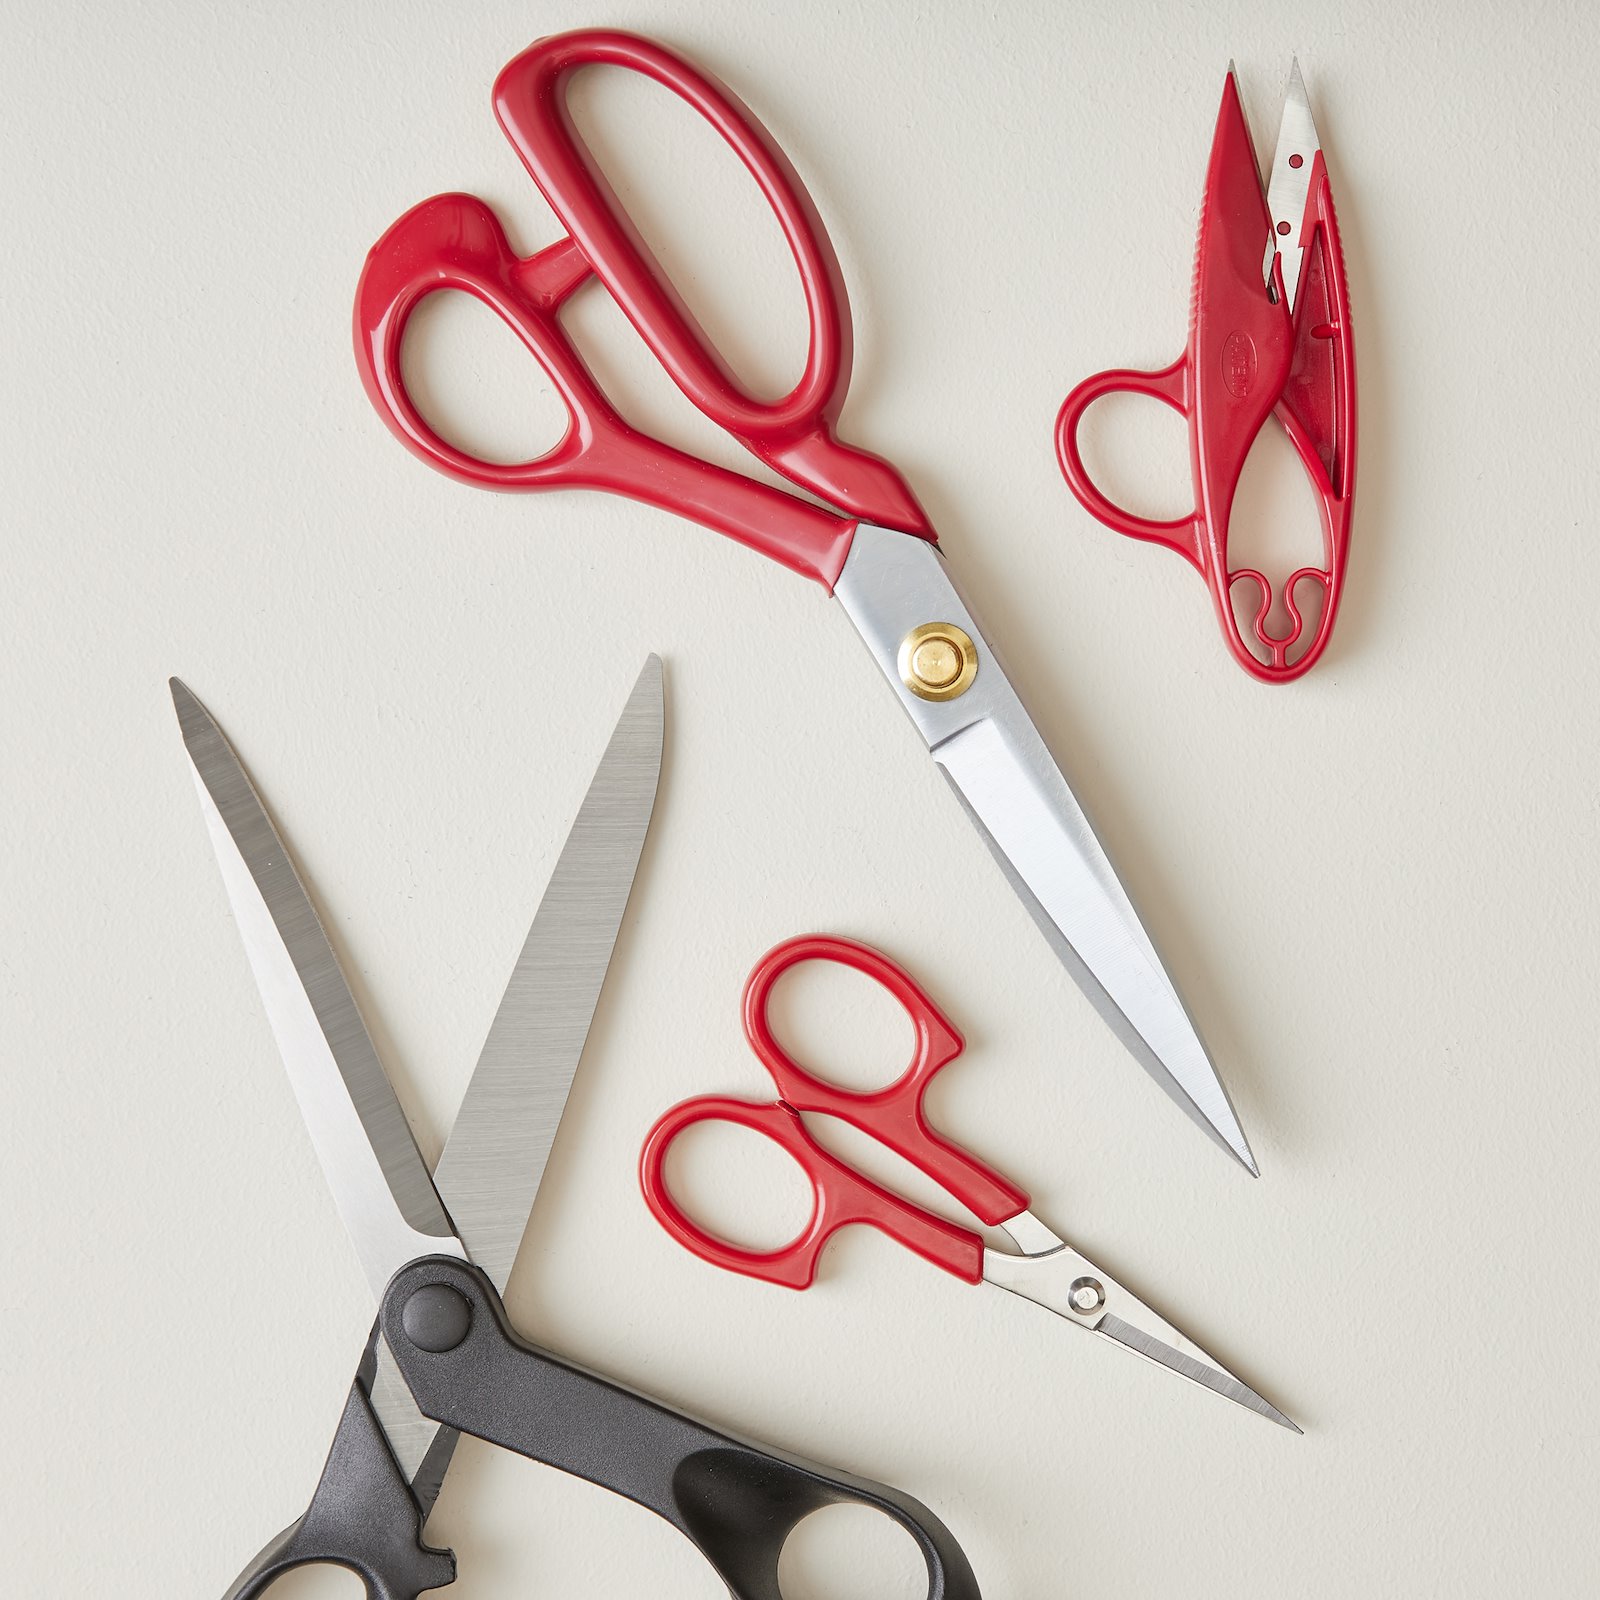 Tailors Fabric scissors 24cm